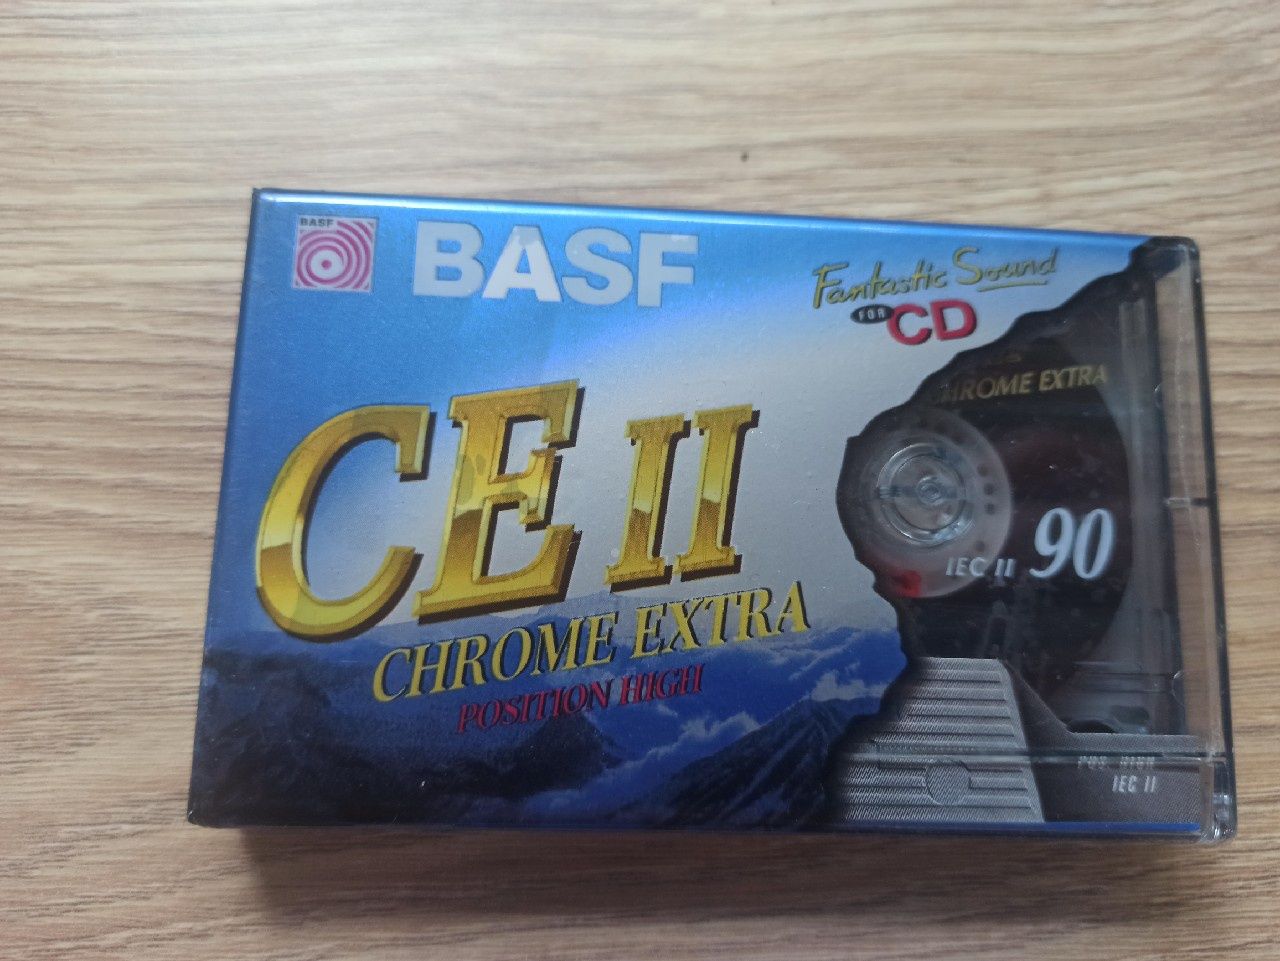 BASF kaseta CE II